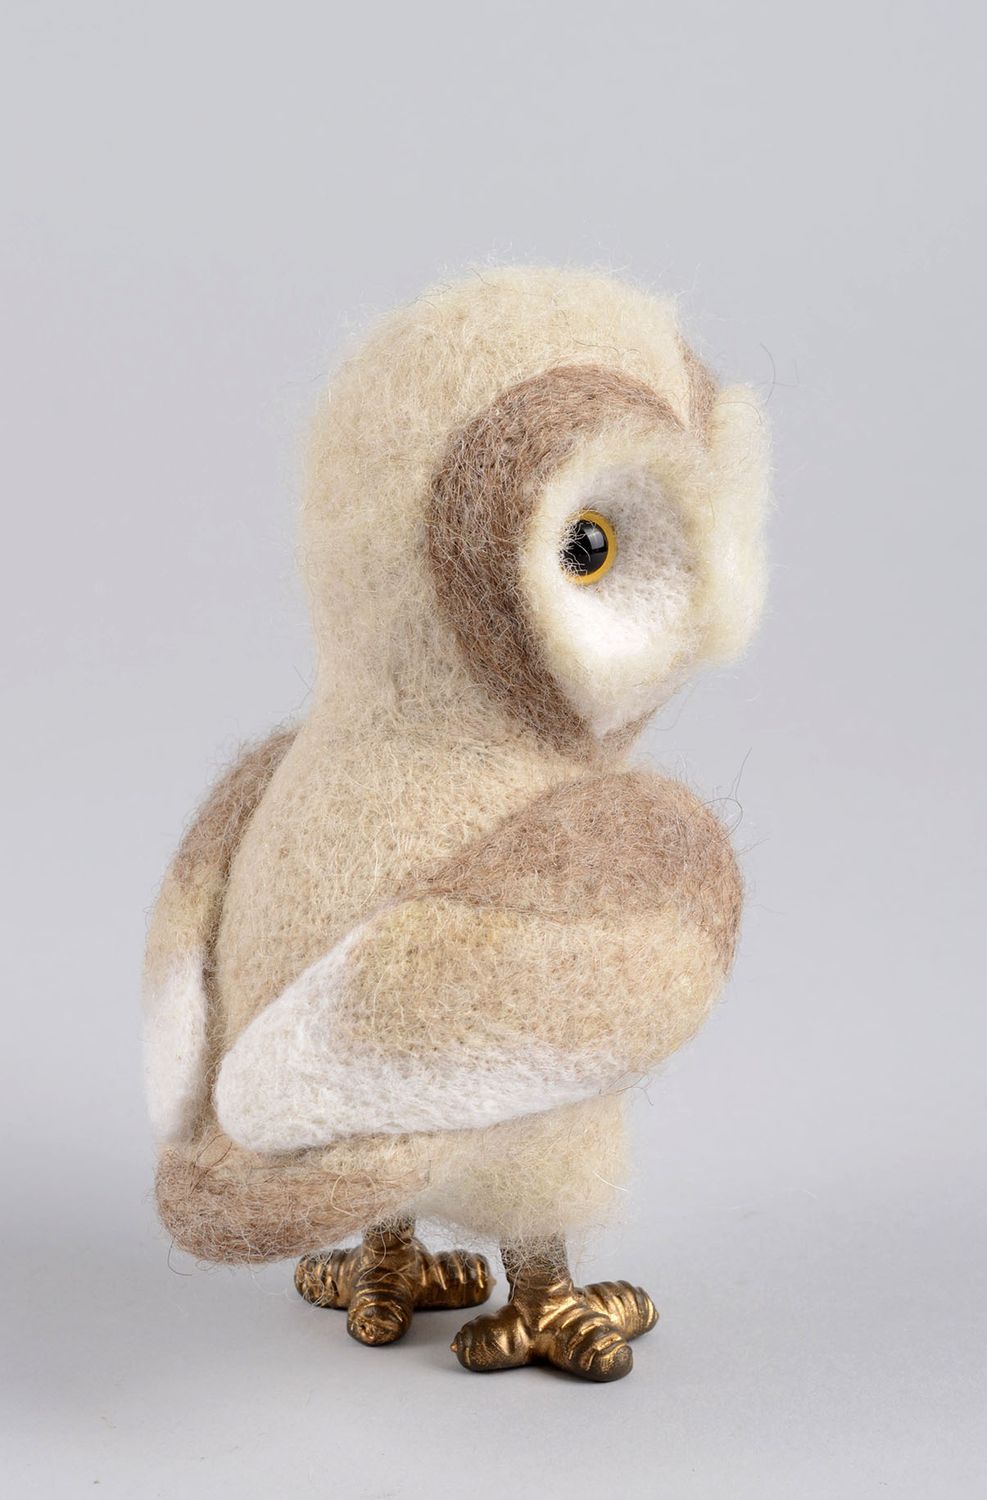 Валяная игрушка сова ручной работы игрушка из шерсти декоративная мягкая игрушка фото 3